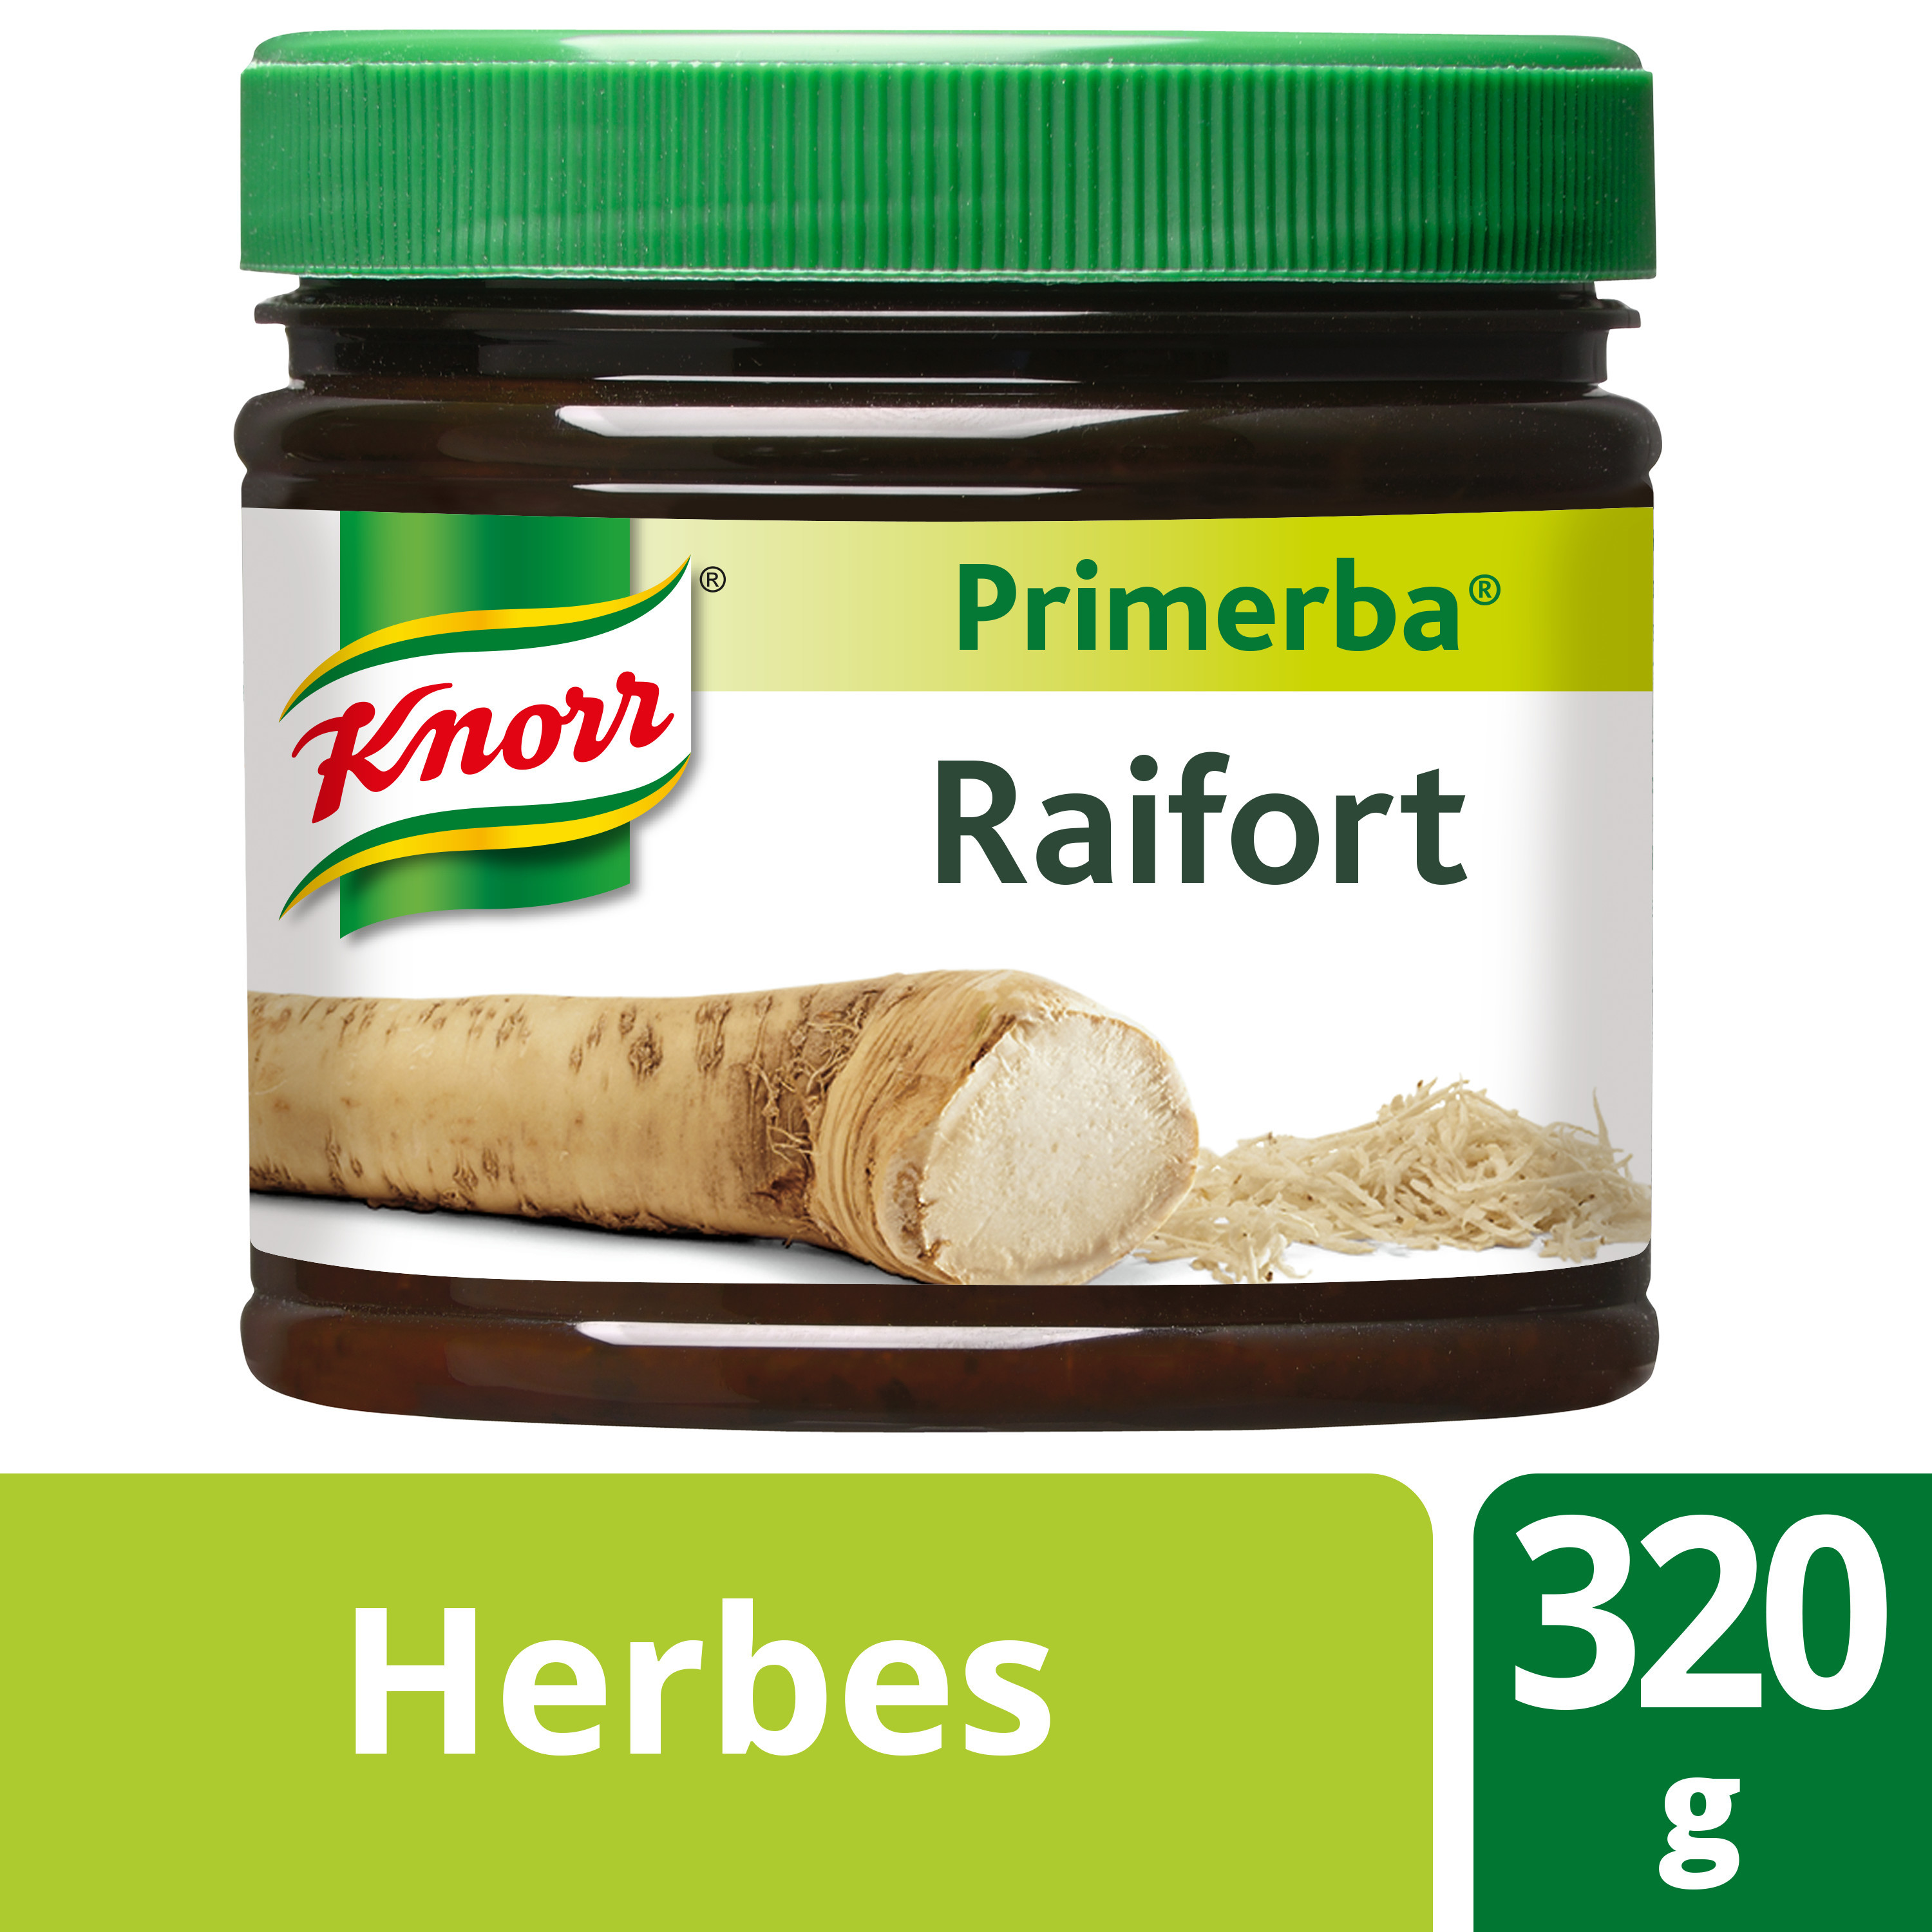 Knorr Primerba Herbes raifort 320gr